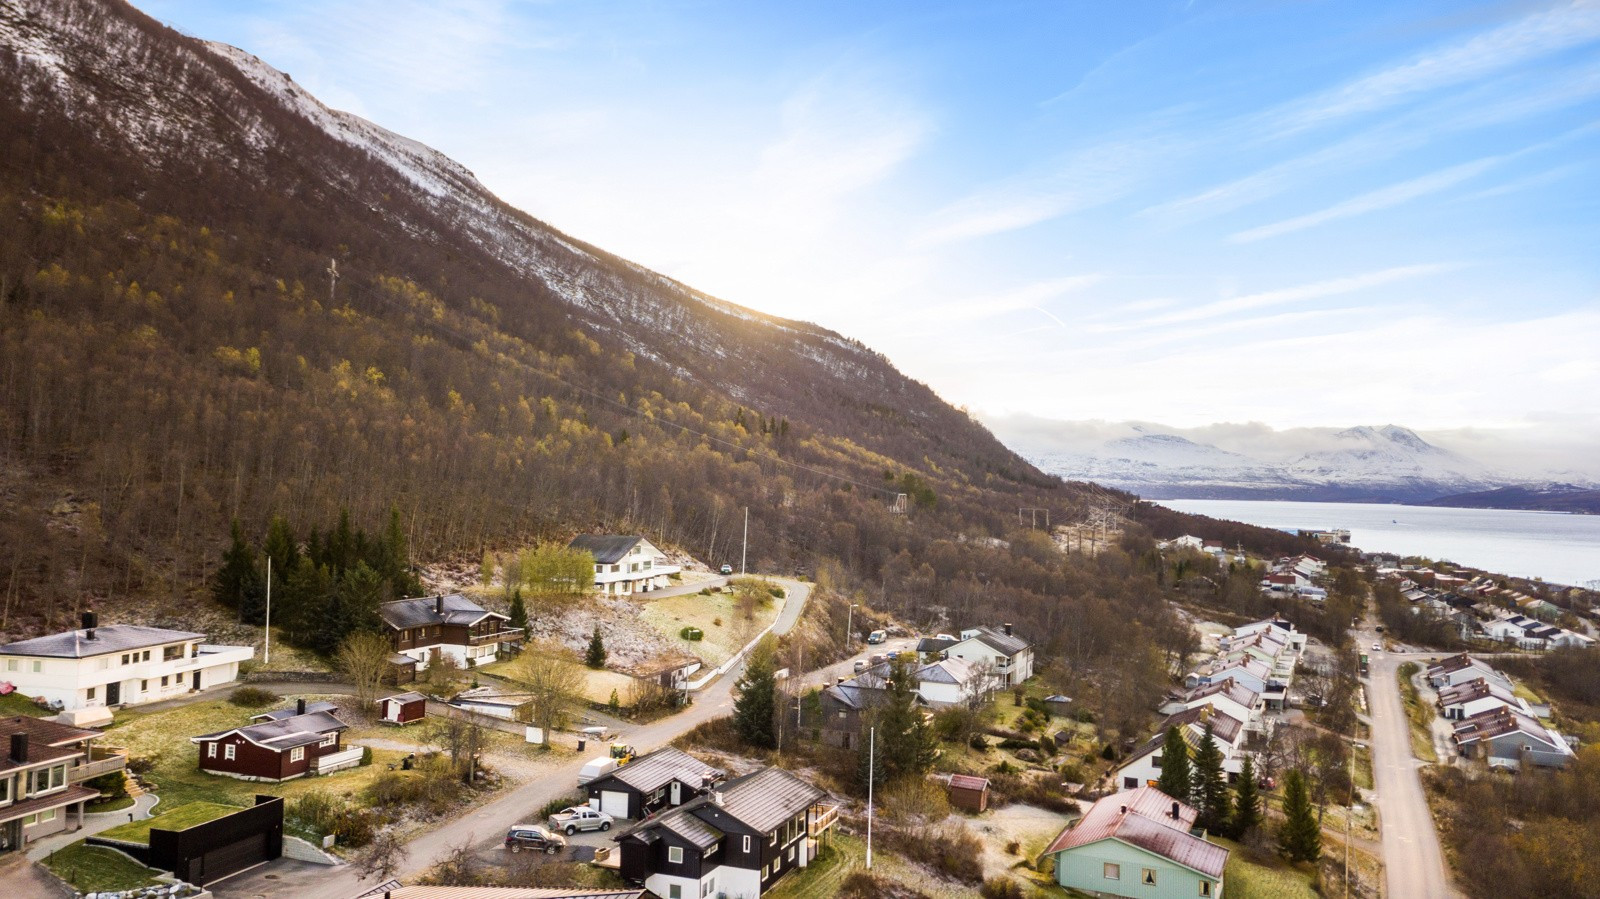 Tomten befinner seg innerst i Sollivegen, en blindvei sentralt i Tromsdalen.